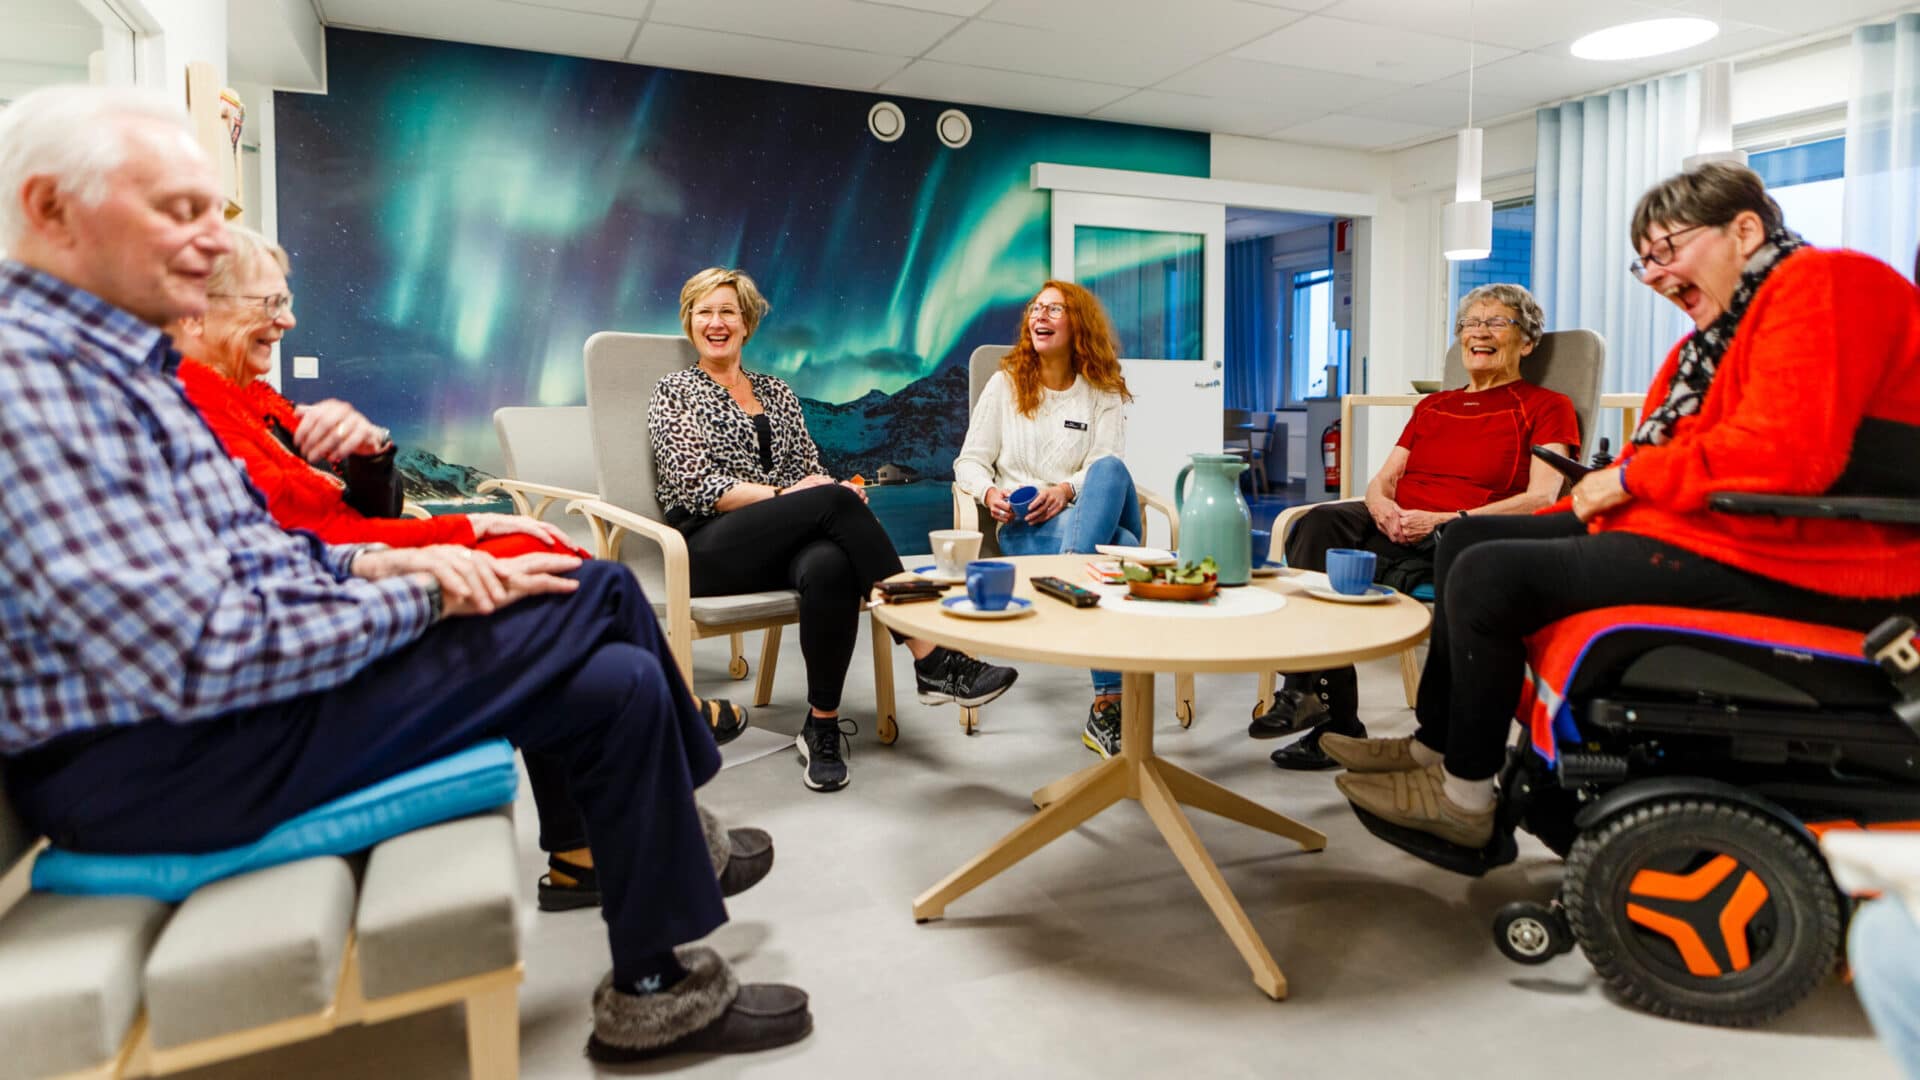 Boende och personal på Å-center trygghetsboende som sitter runt ett bord och skrattar tillsammans.